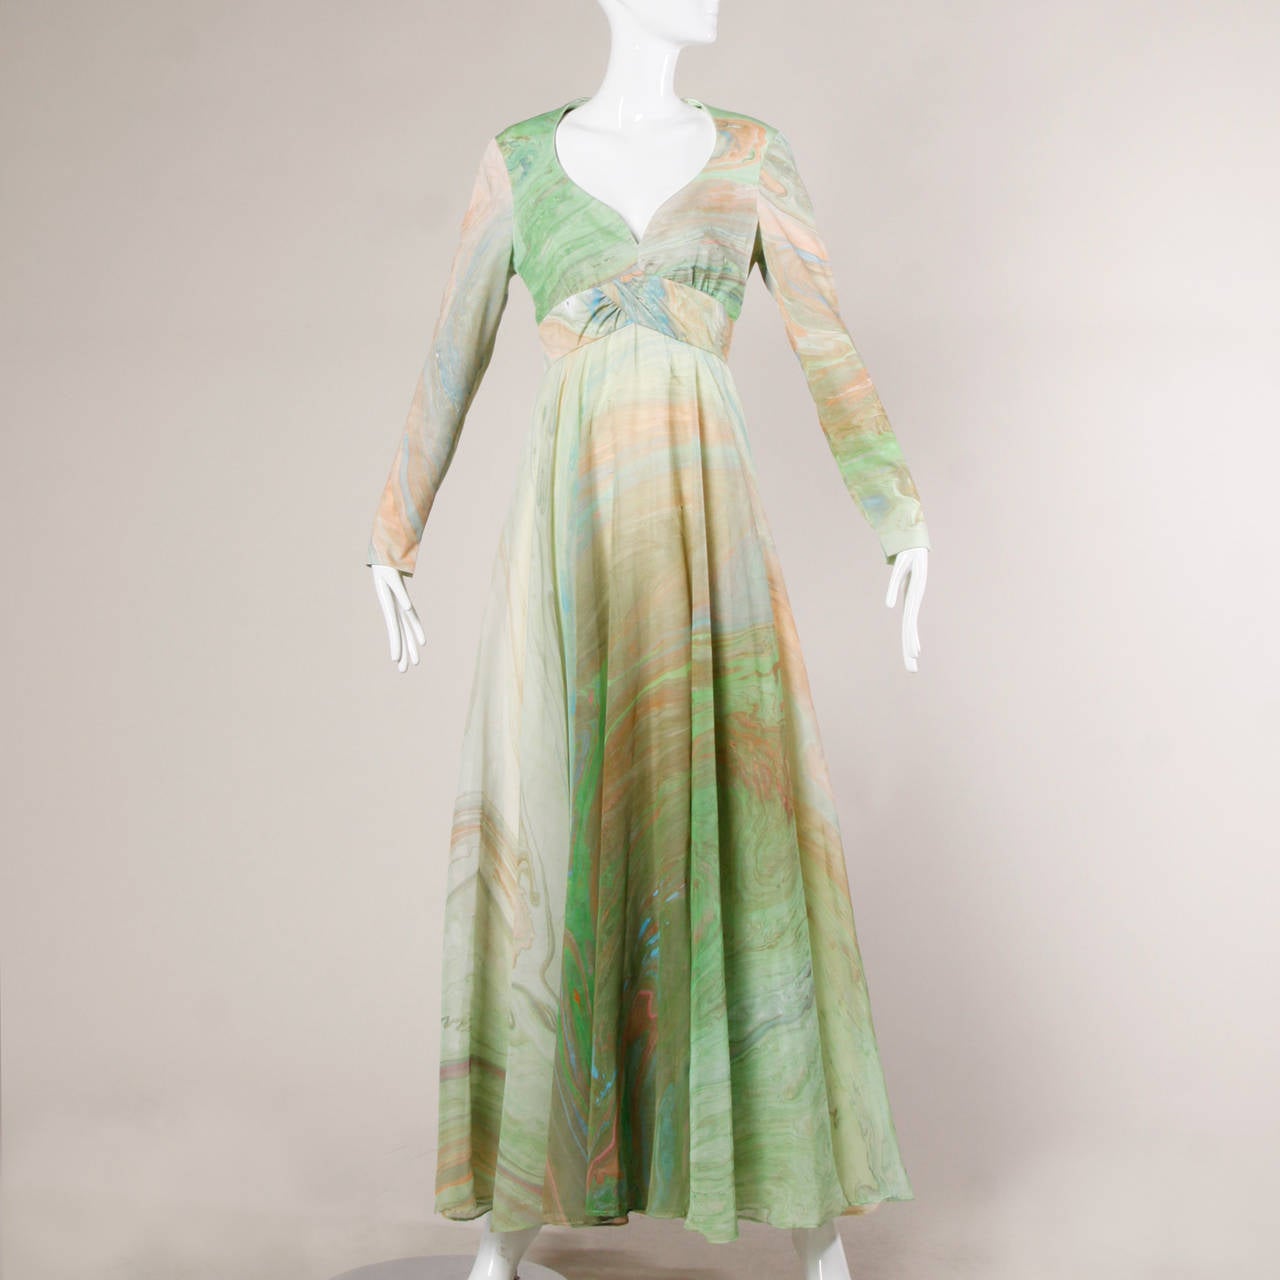 Don Luis Espana 1970s Vintage Marbleized Print Maxi Dress 3